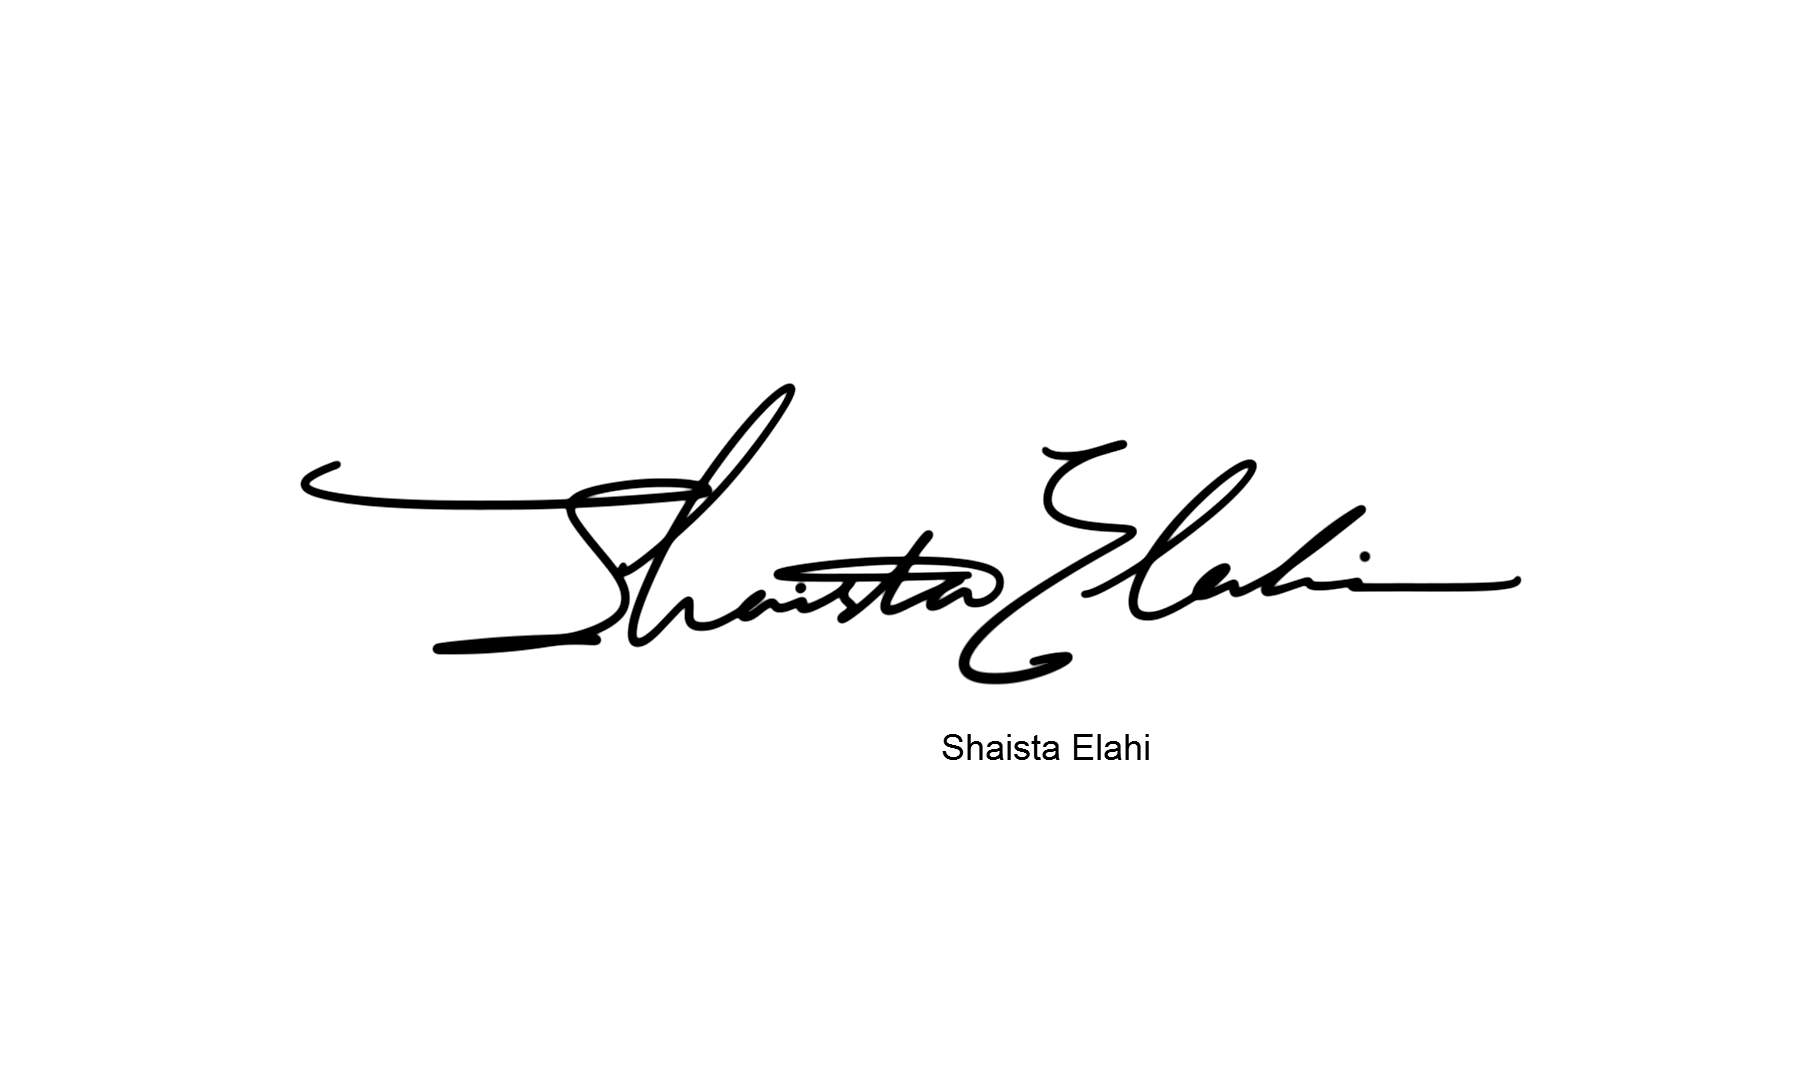 个性签丨英文签名设计丨shaista elahi多种设计方案